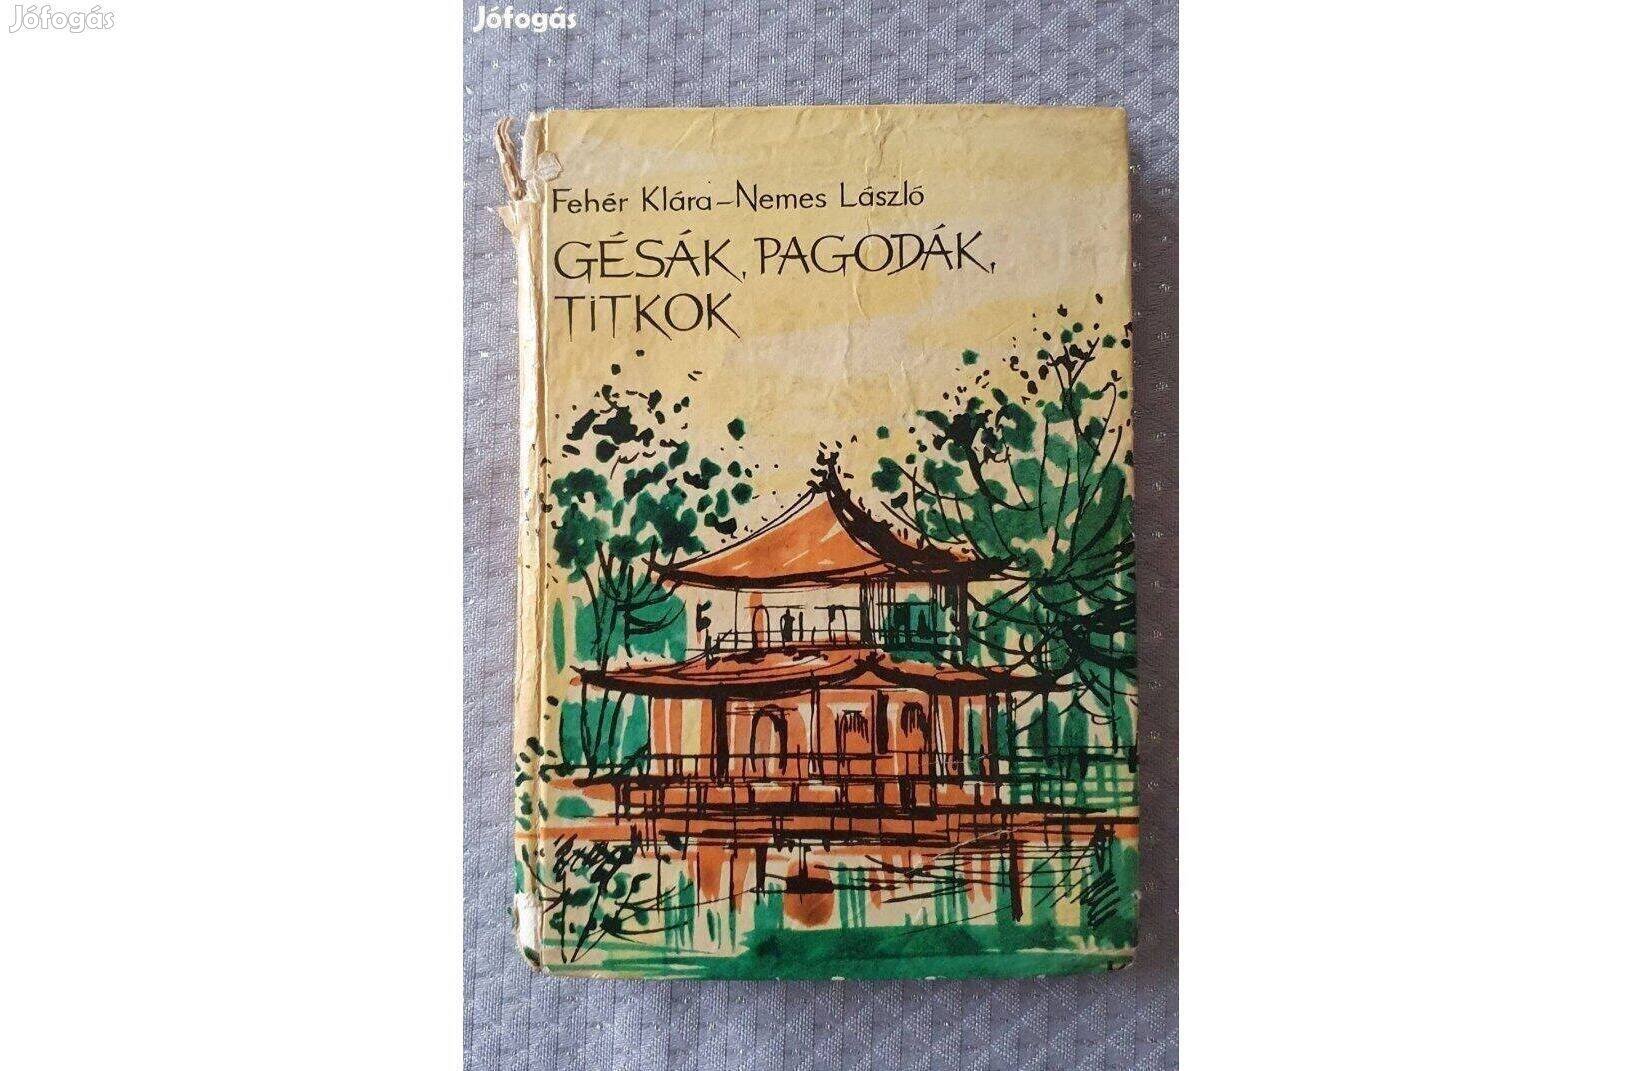 Nemes László-Fehér Klára: Gésák, pagodák, titkok 1965